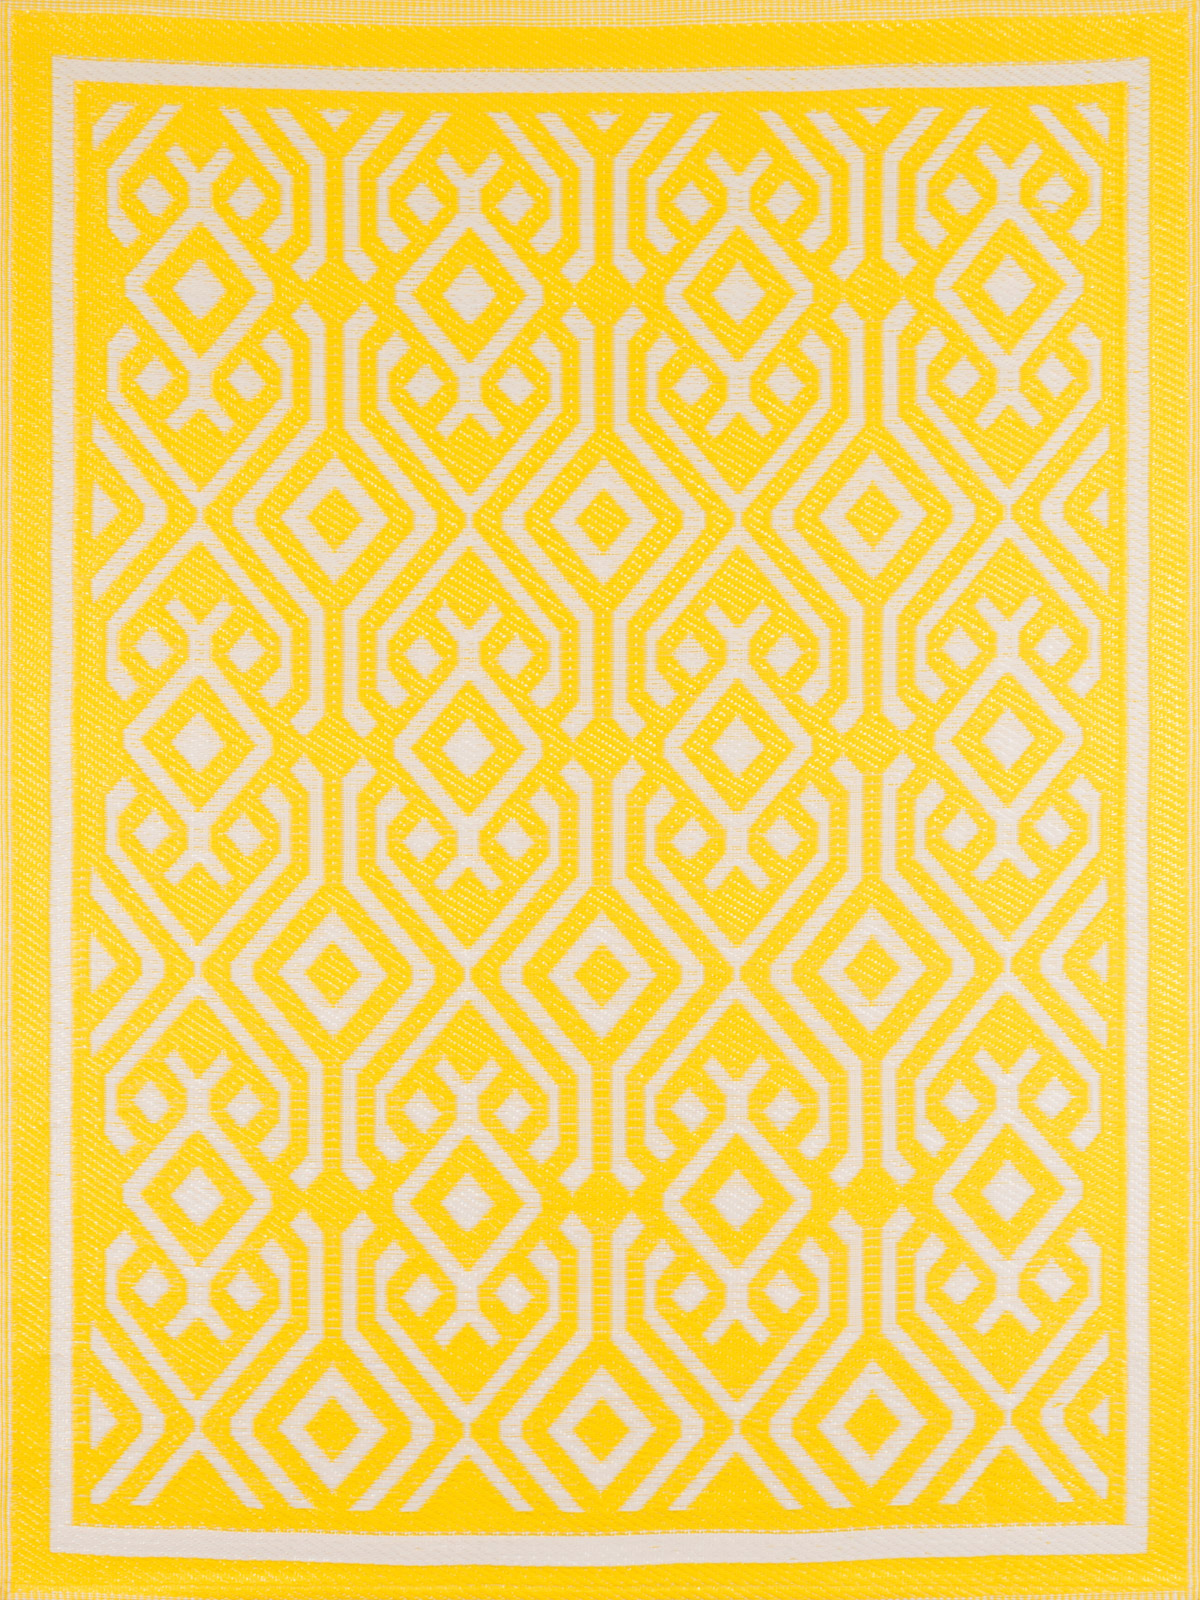 Tapis extérieur jaune au motif aztèque 180x280